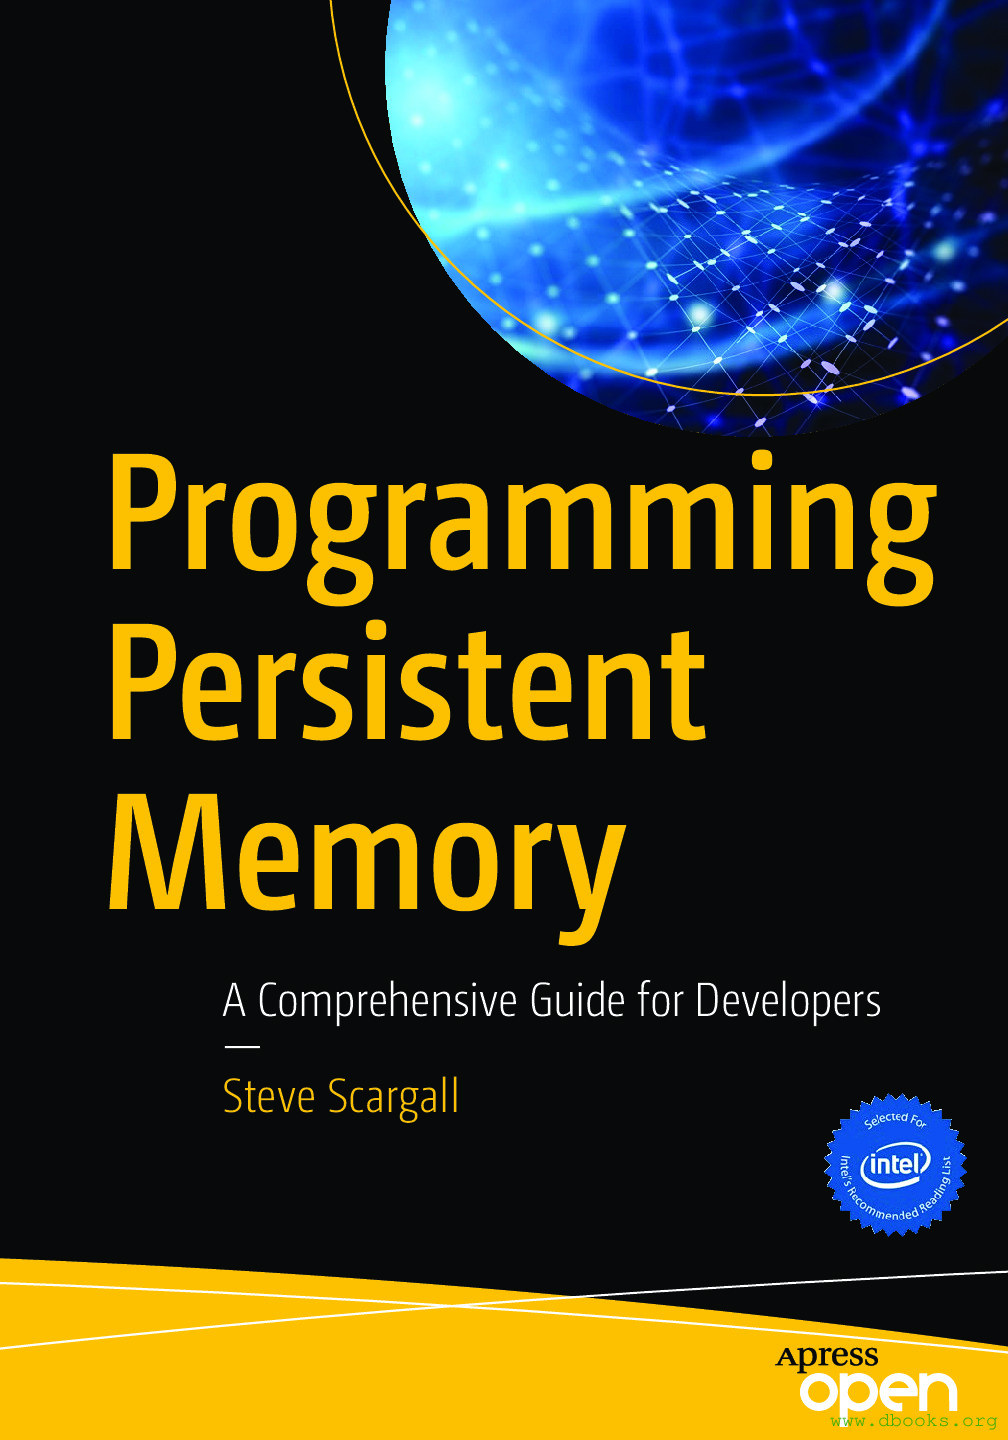 Programming Persistent Memory